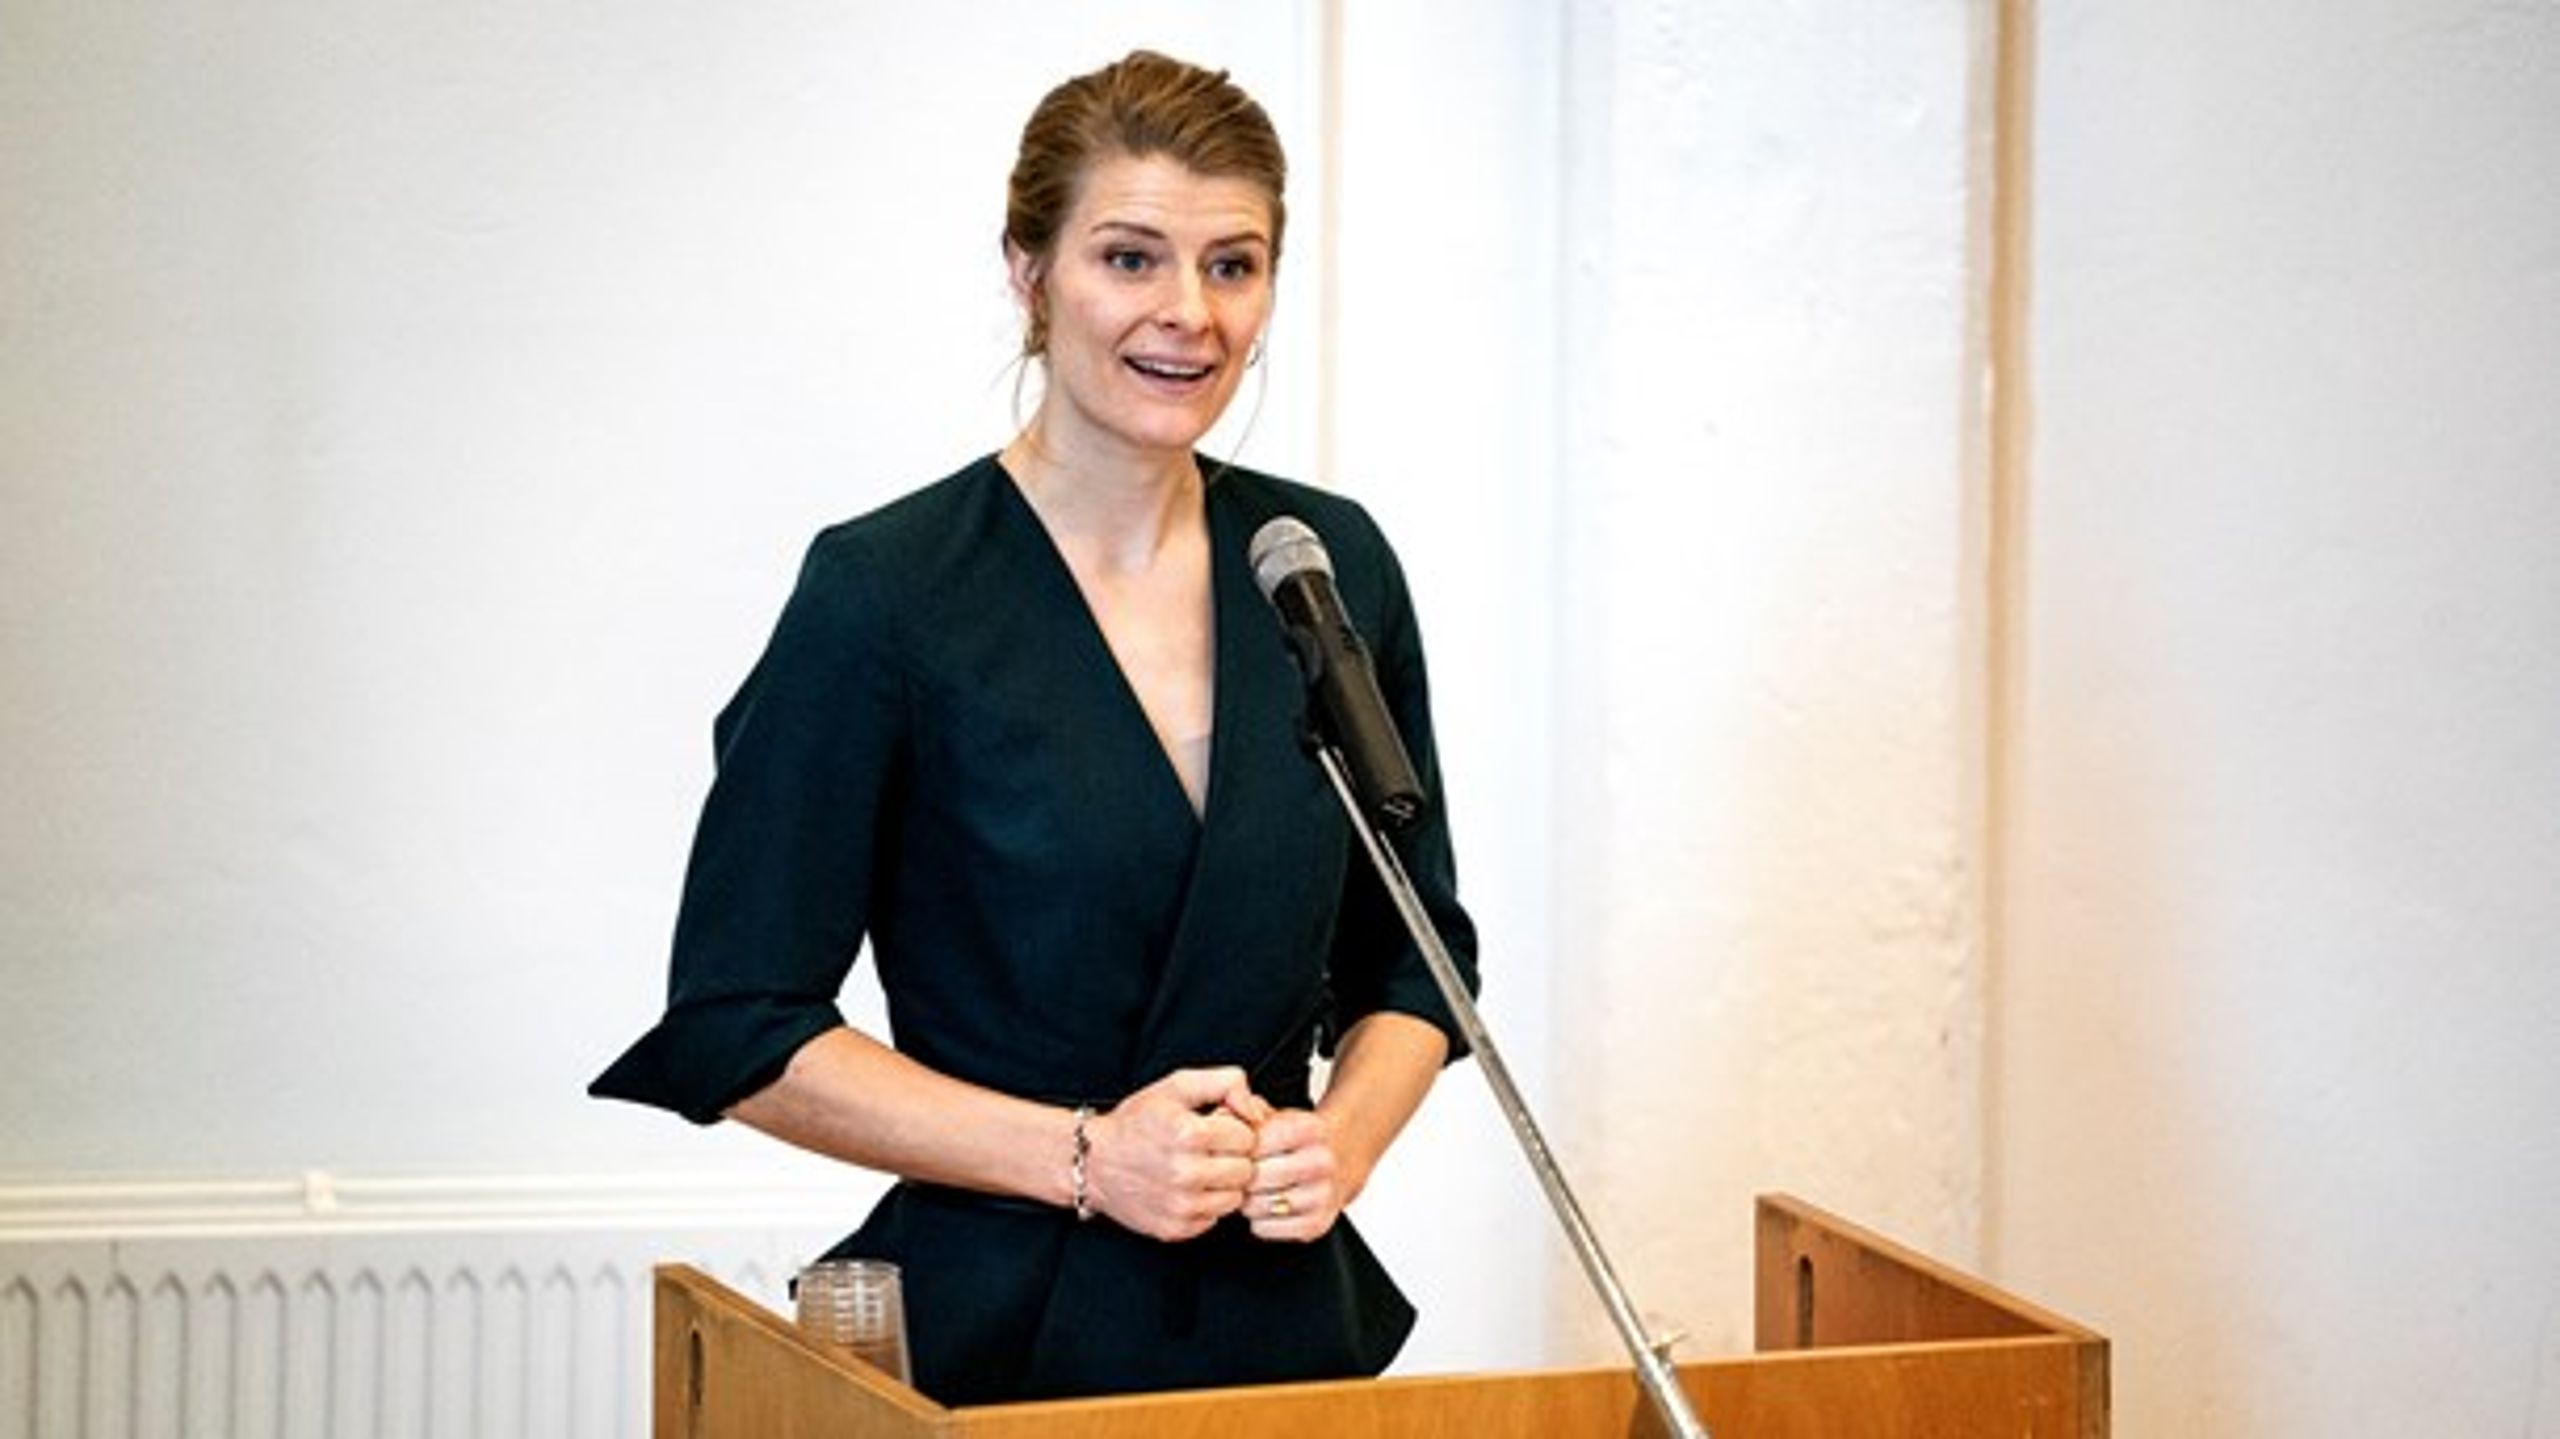 Forsknings- og uddannelsesminister Ane Halsboe-Jørgensen (S) holder tale til et event på Københavns Professionshøjskole.